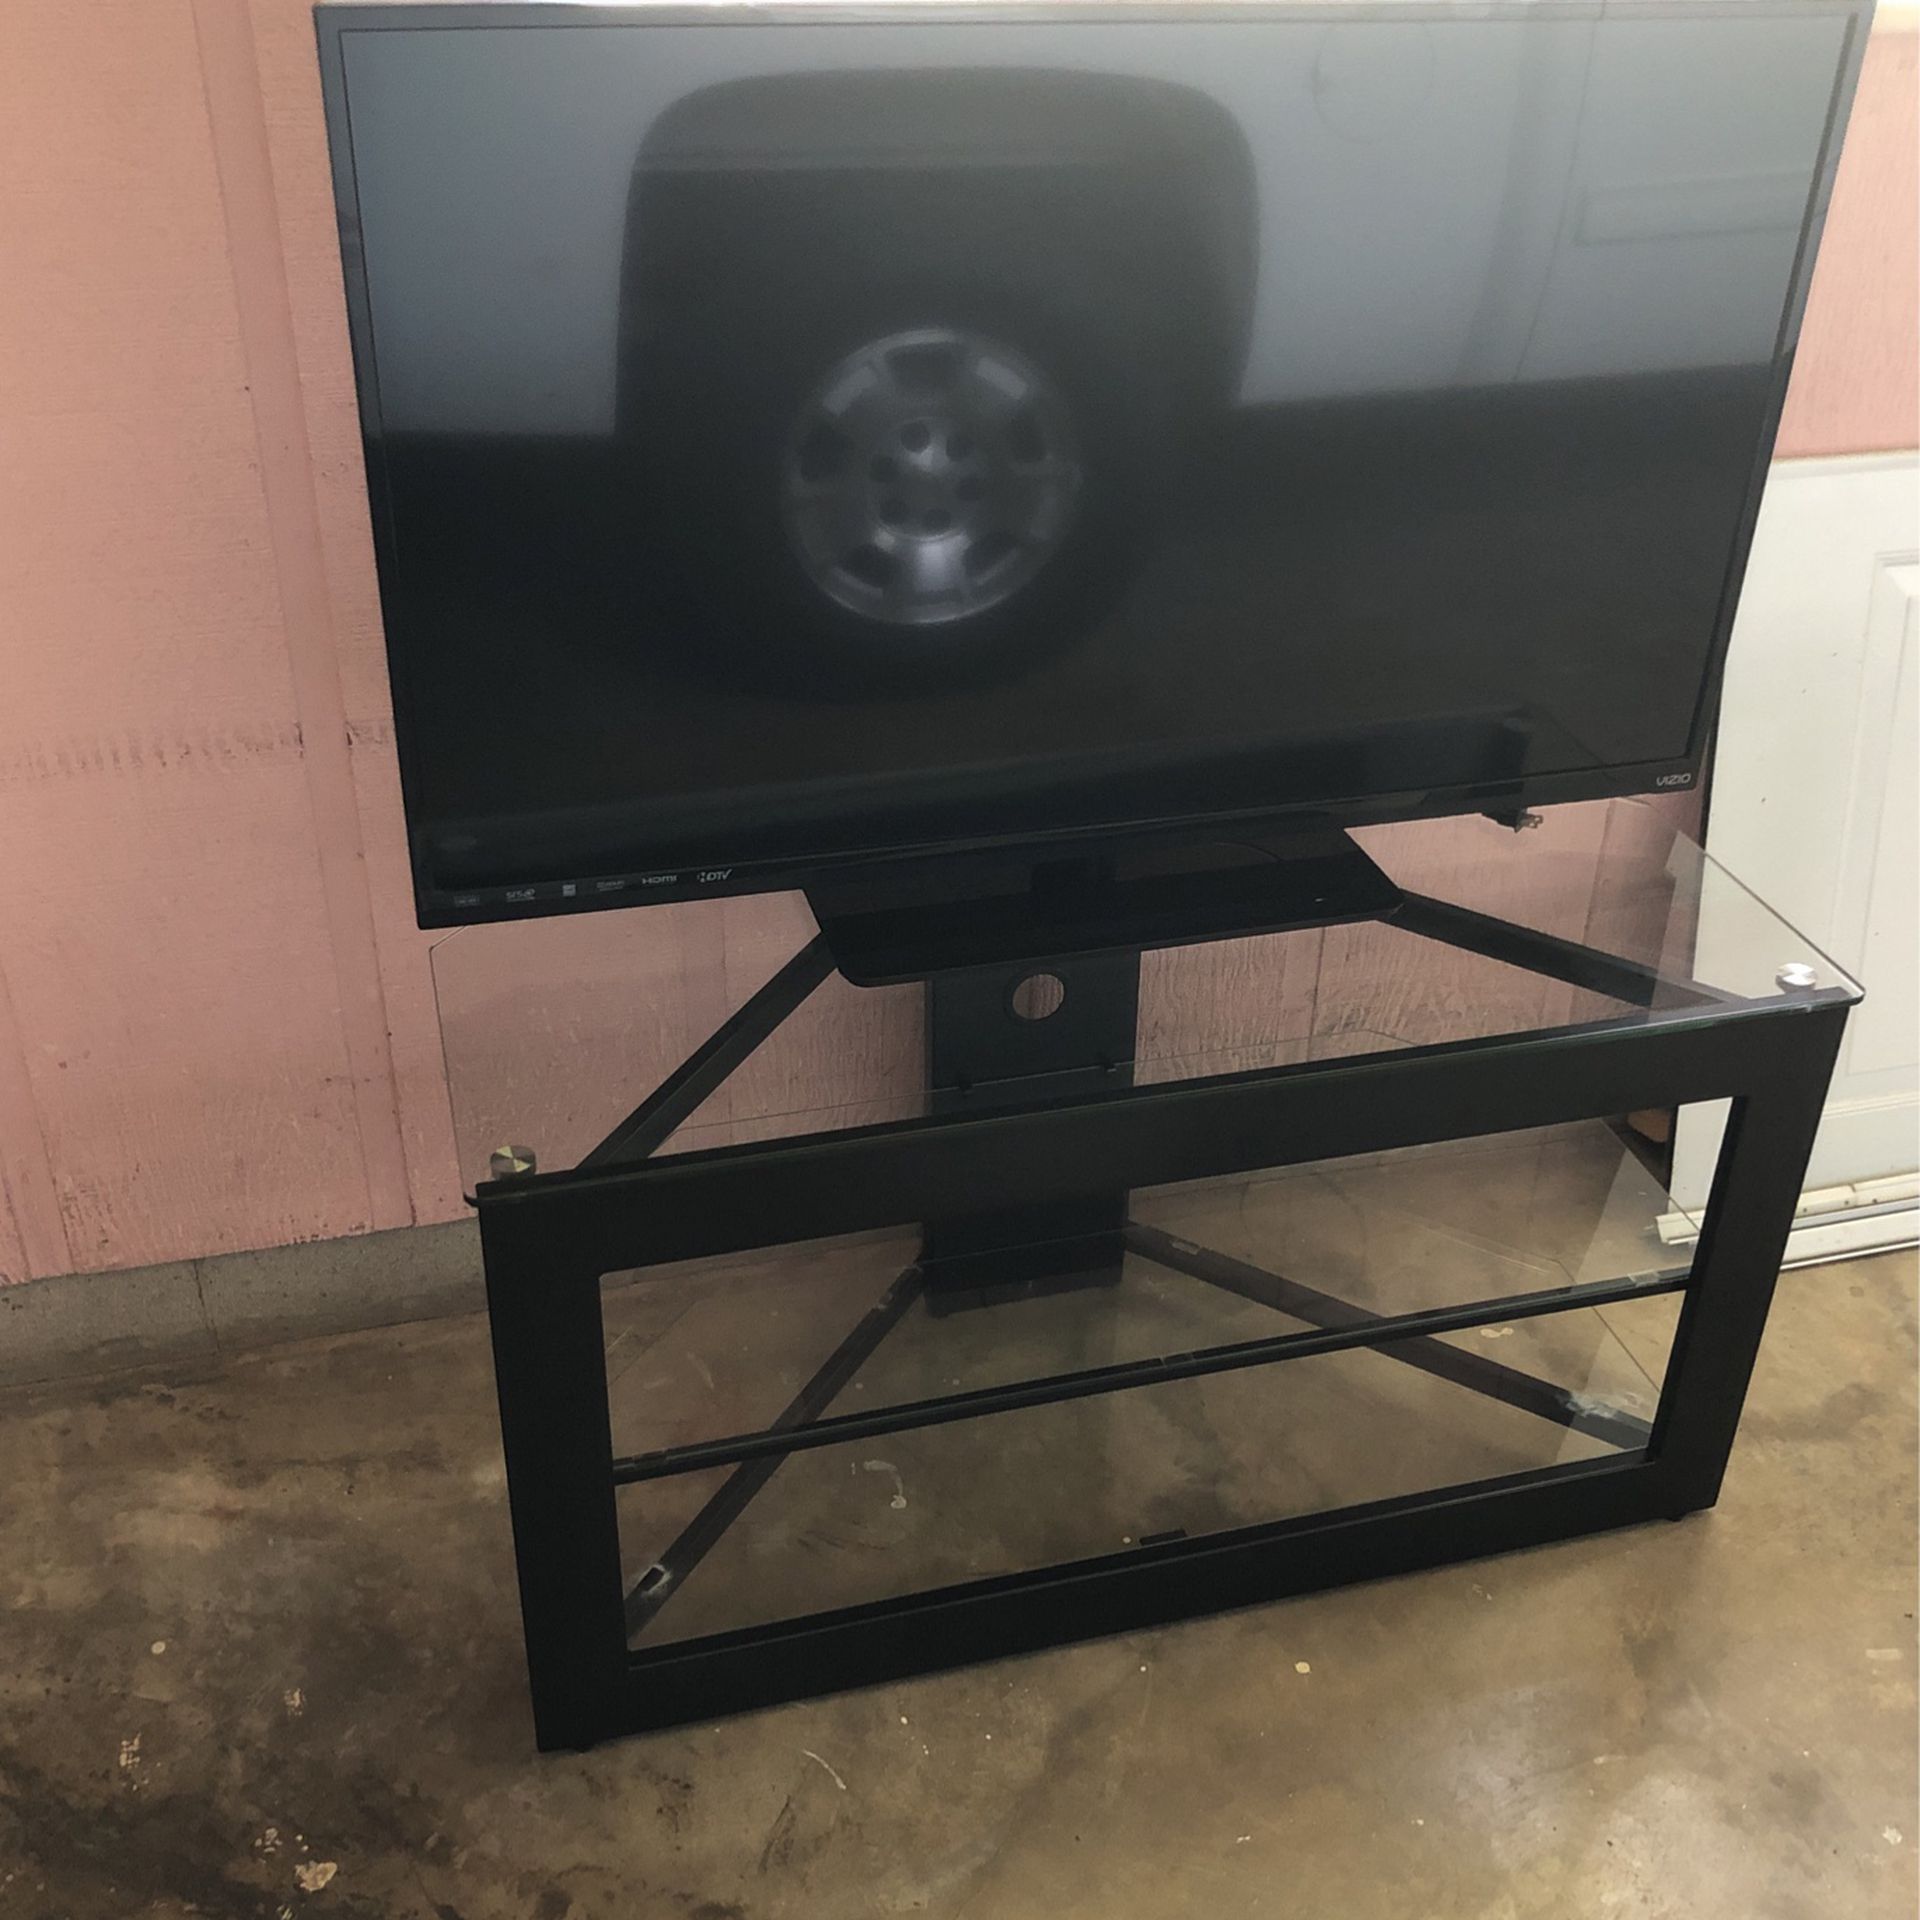 Vizio 47” Non Smart TV With TV Stand